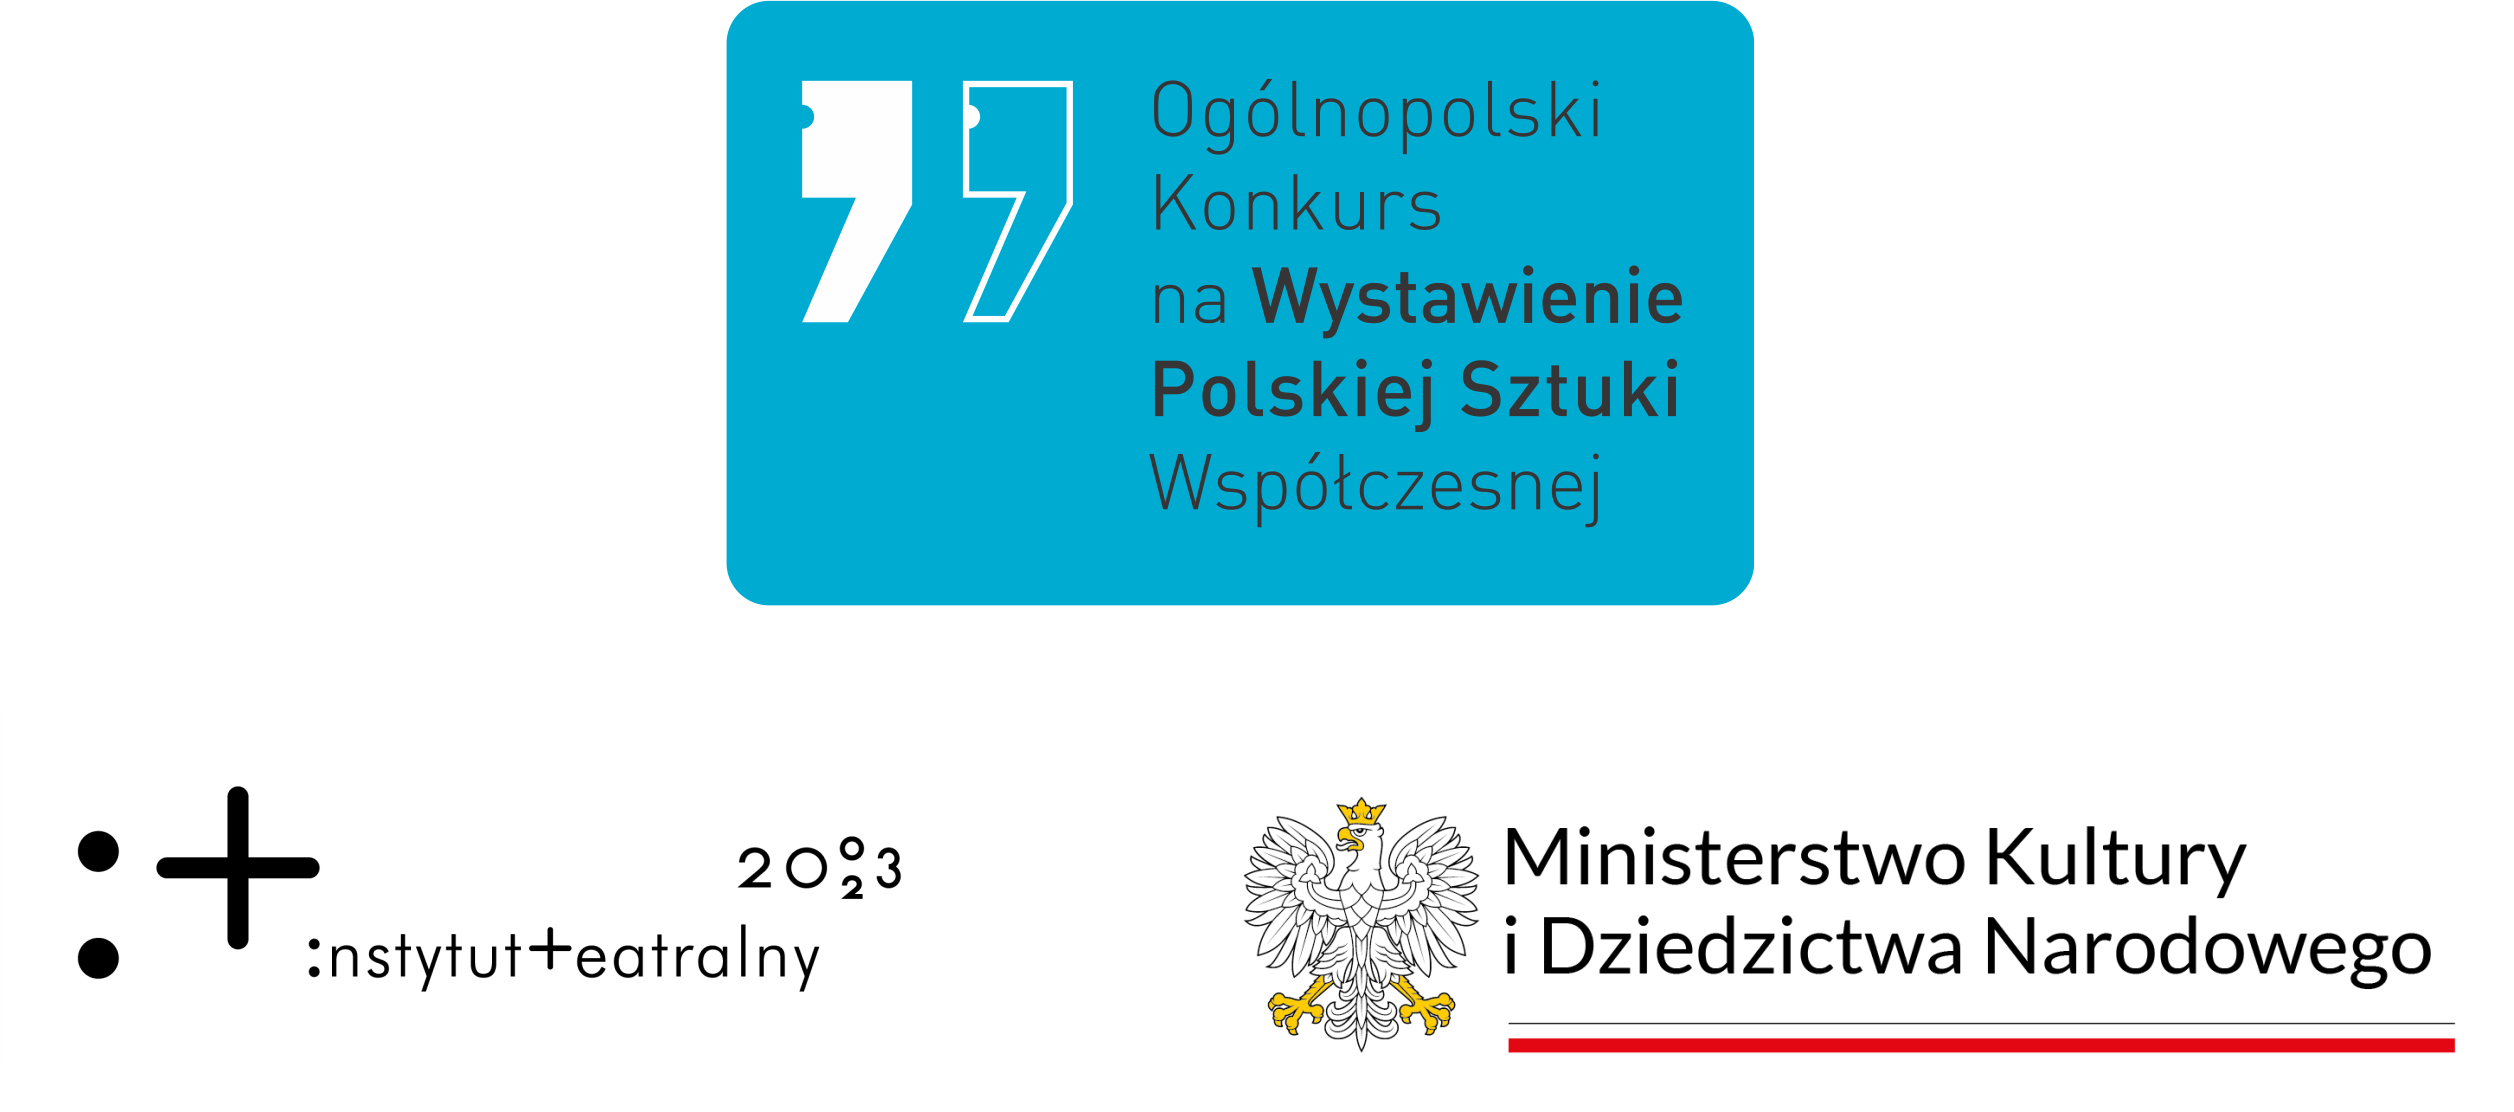 Logotypy: Ogólnopolski Konkurs na Wystawienie Polskiej Sztuki Współczesnej, Instytut Teatralny, Ministerstwo Kultury i Dziedzictwa Narodowego.